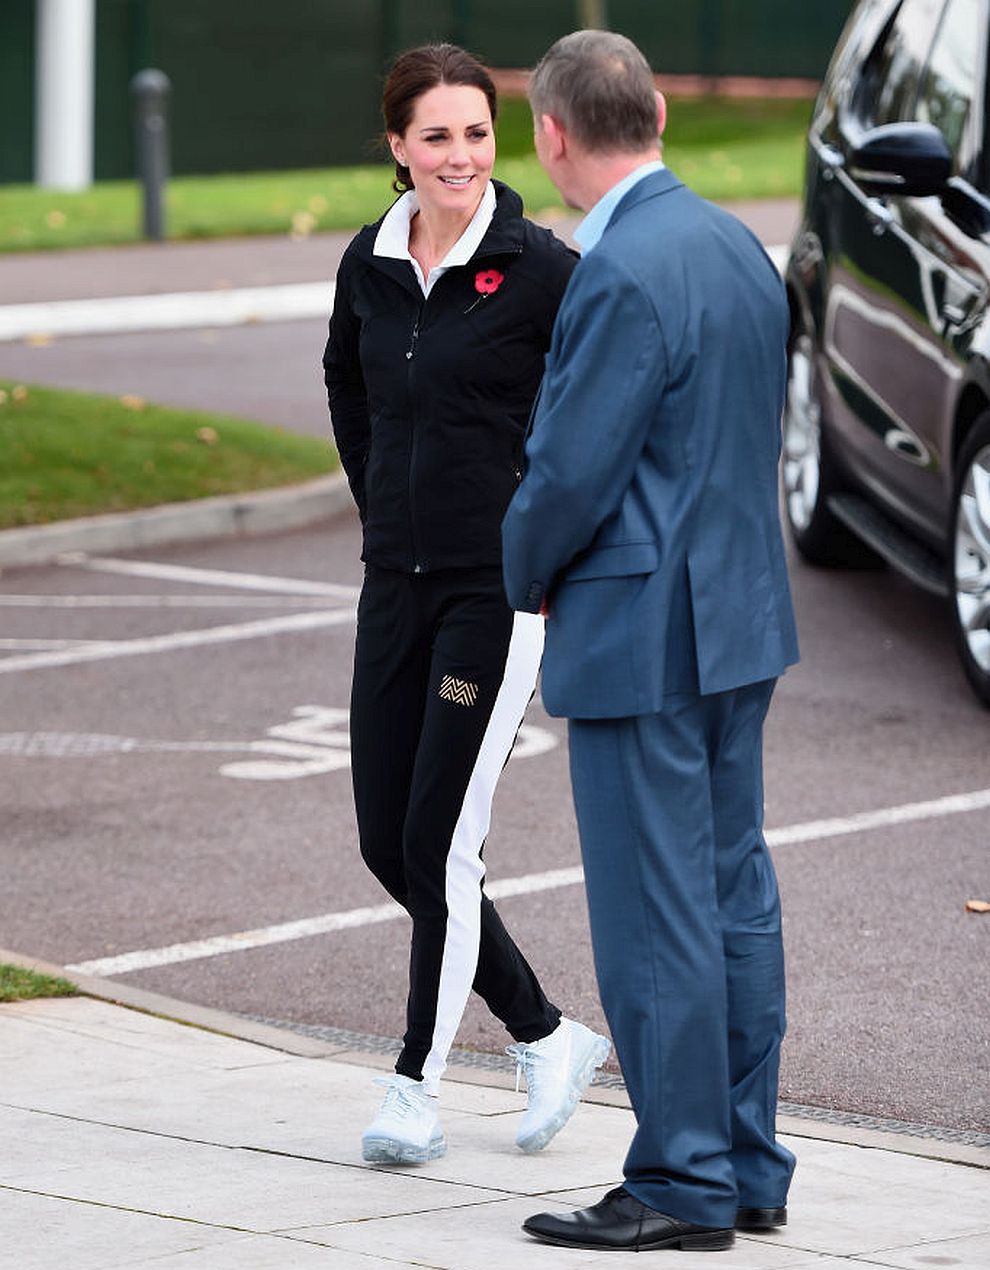 Въоръжена със спортен екип и широка усмивка, херцогиня Катрин показа своите умения на тенис корта